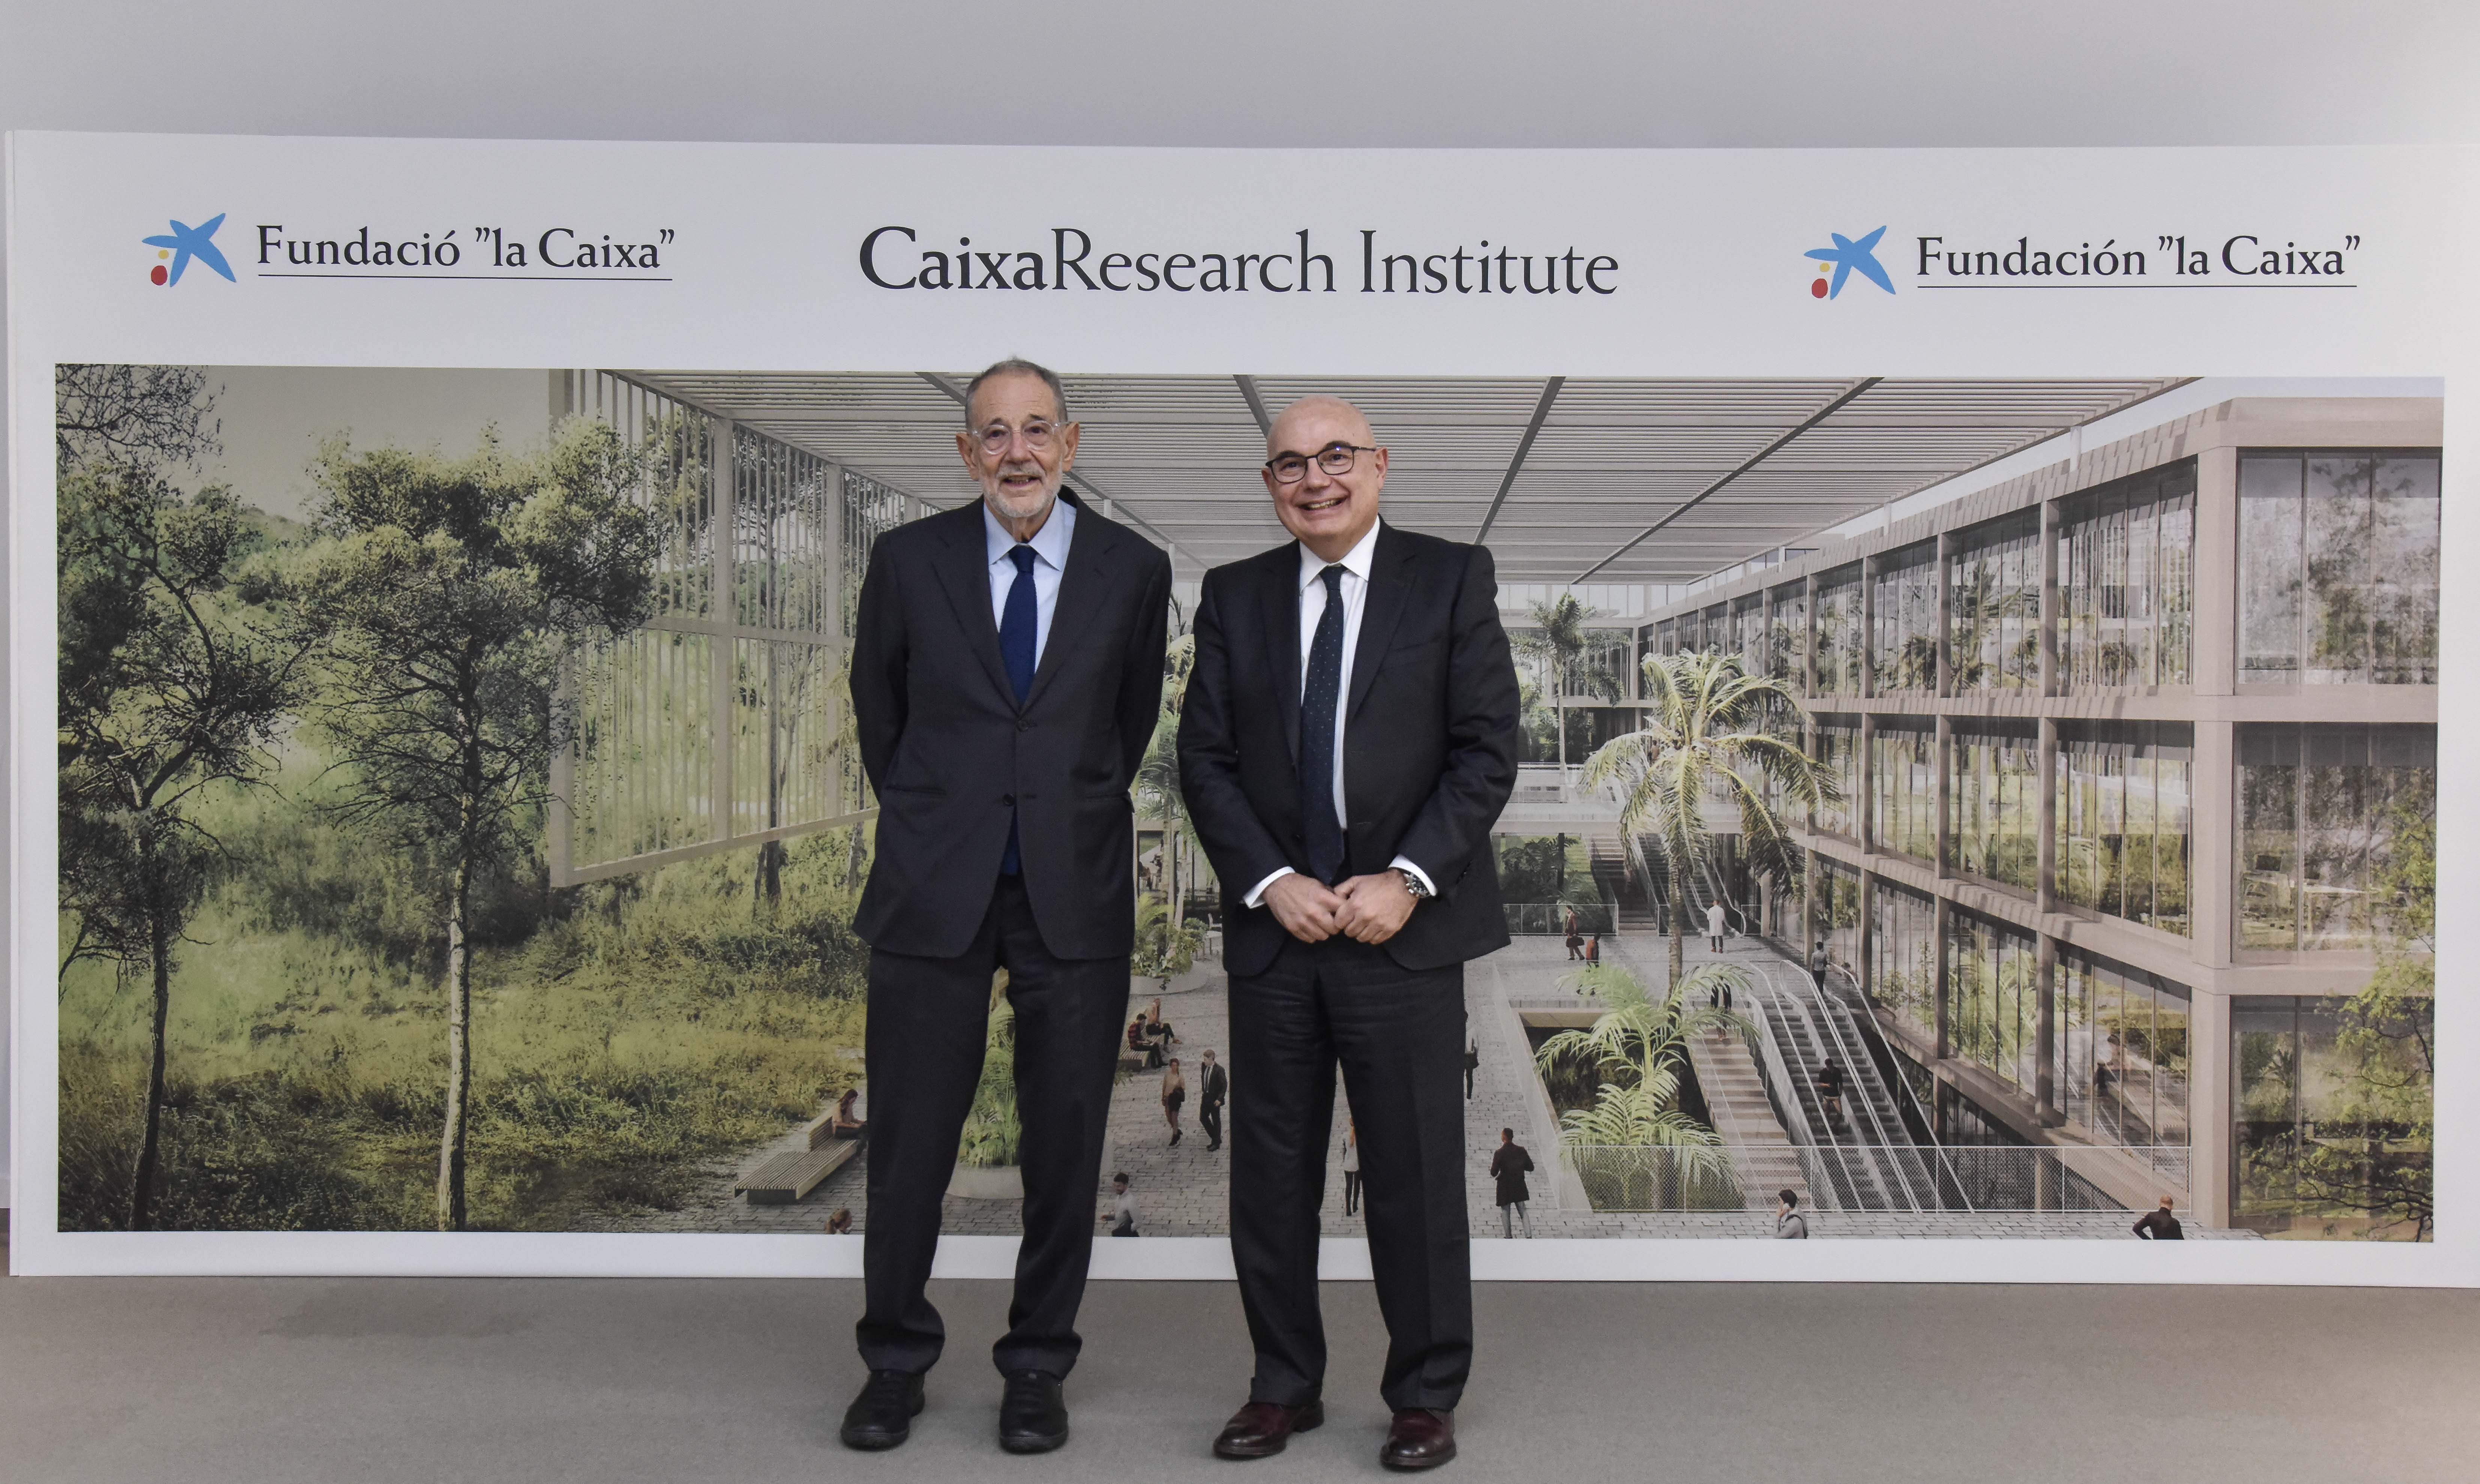 Javier Solana, president del Comitè Científic de la Fundació la Caixa, i Josep Tabernero, director del projecte científic del CaixaReserch Institute FC